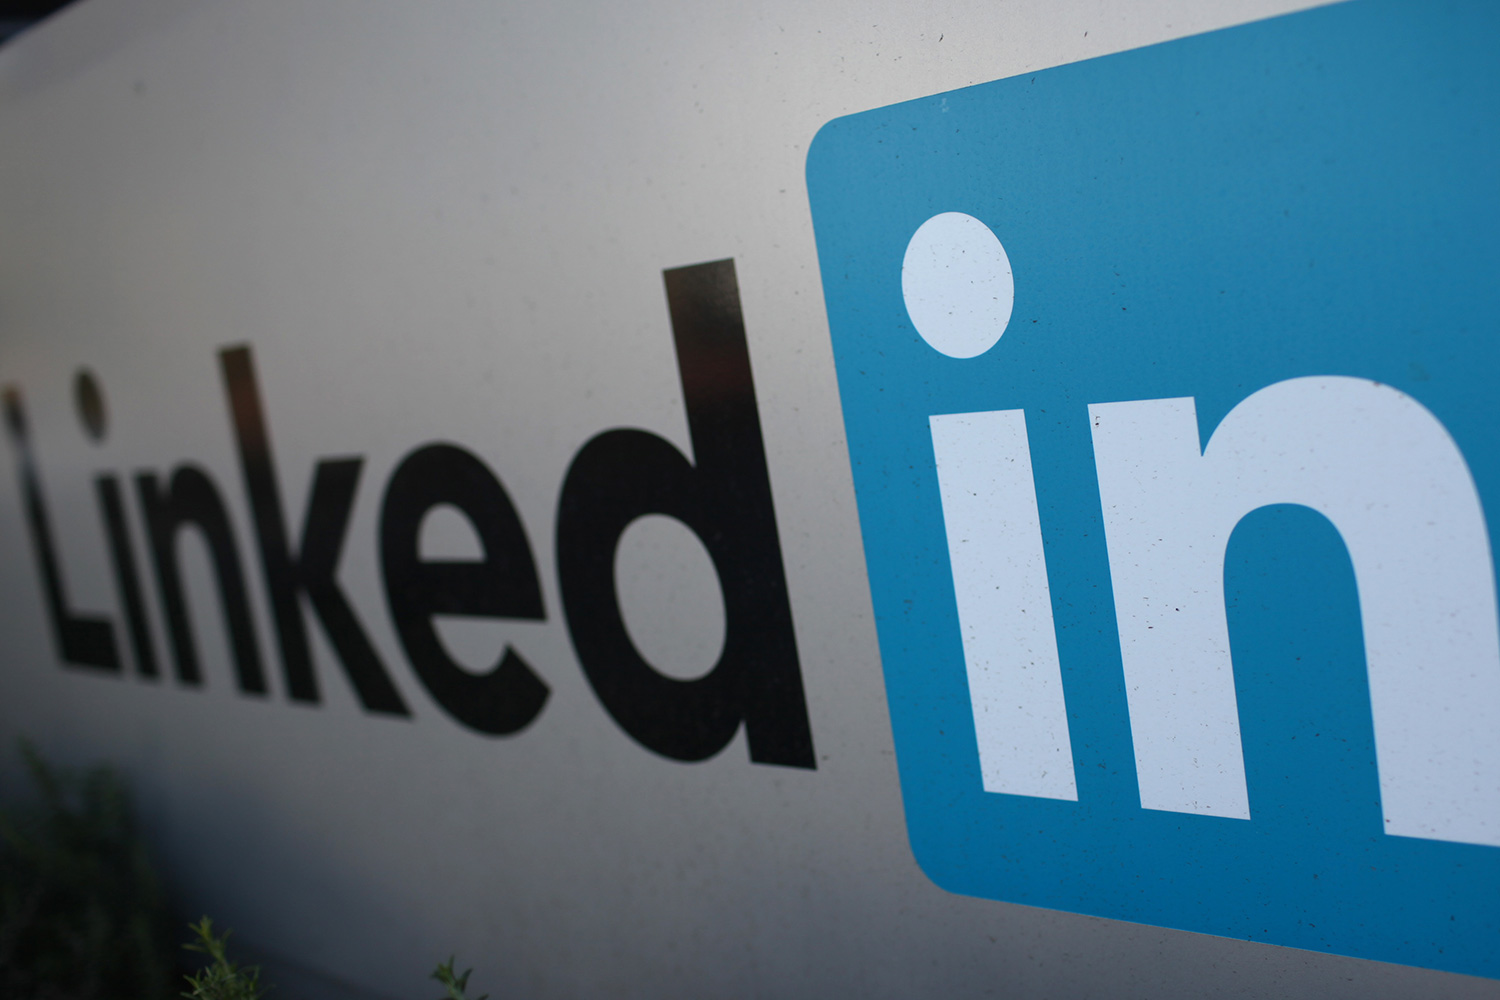 Un hacker vende millones de contraseñas de usuarios de LinkedIn